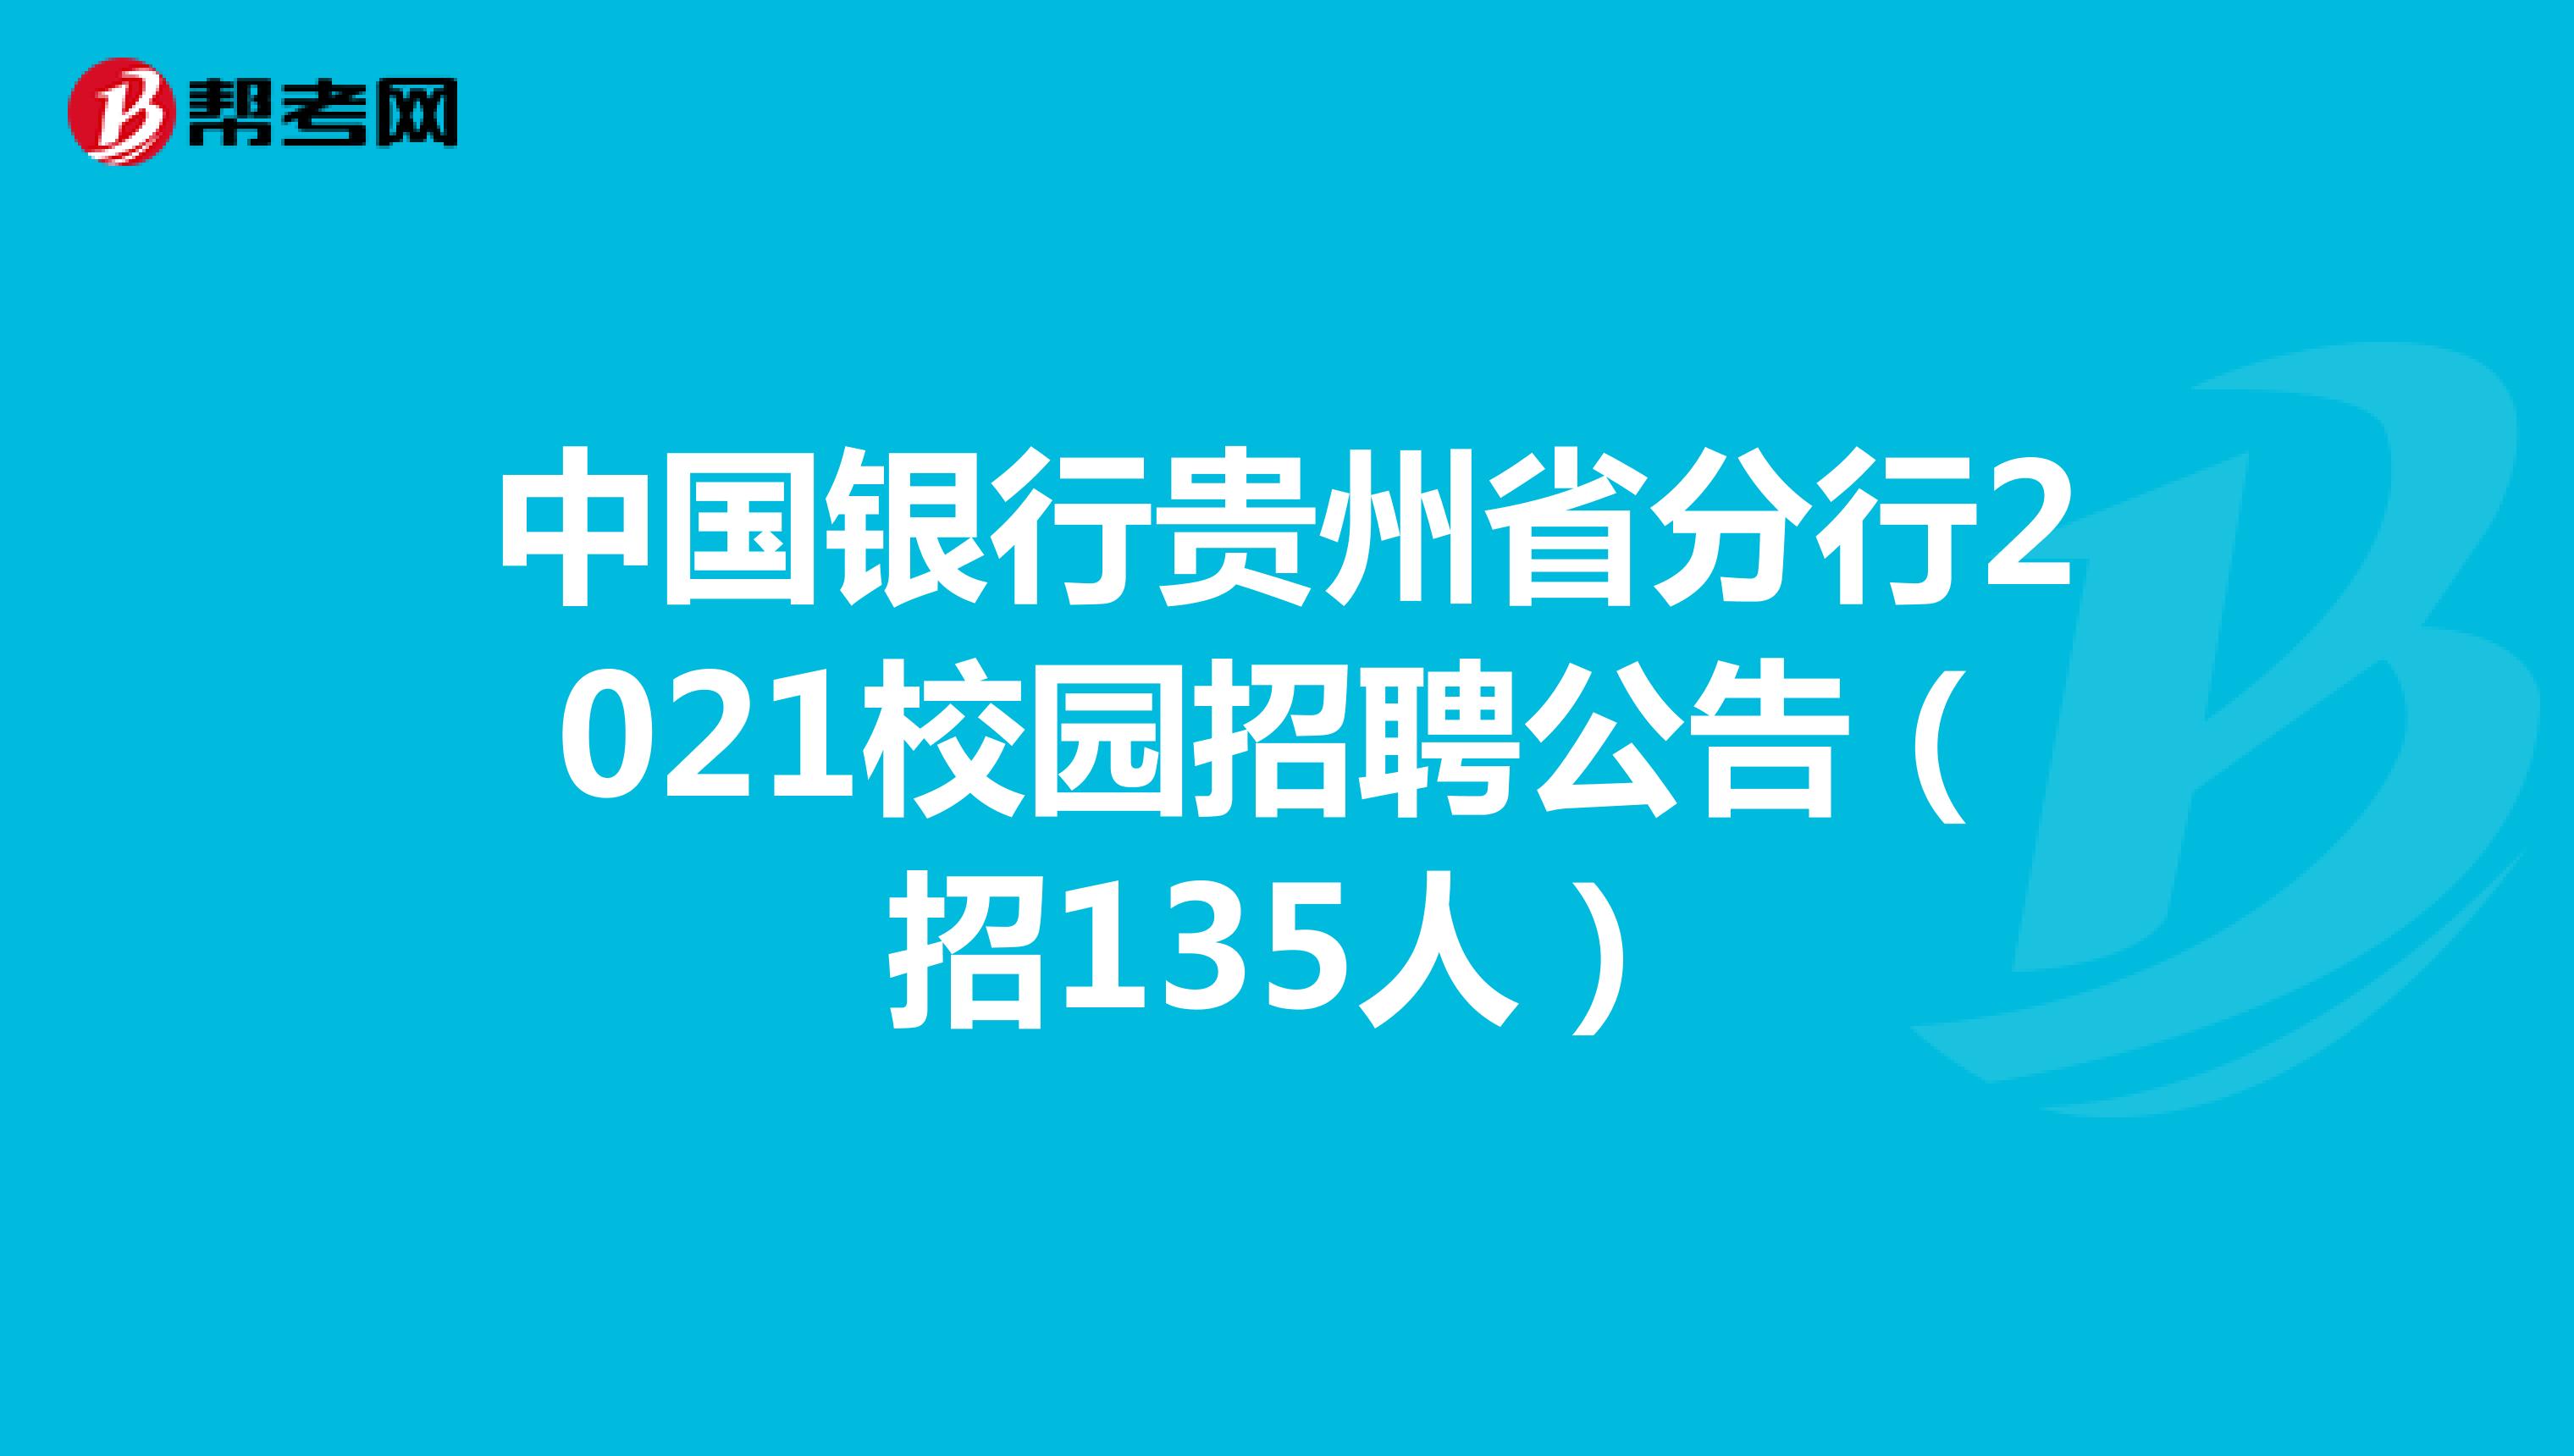 中国银行贵州省分行2021校园招聘公告（招135人）